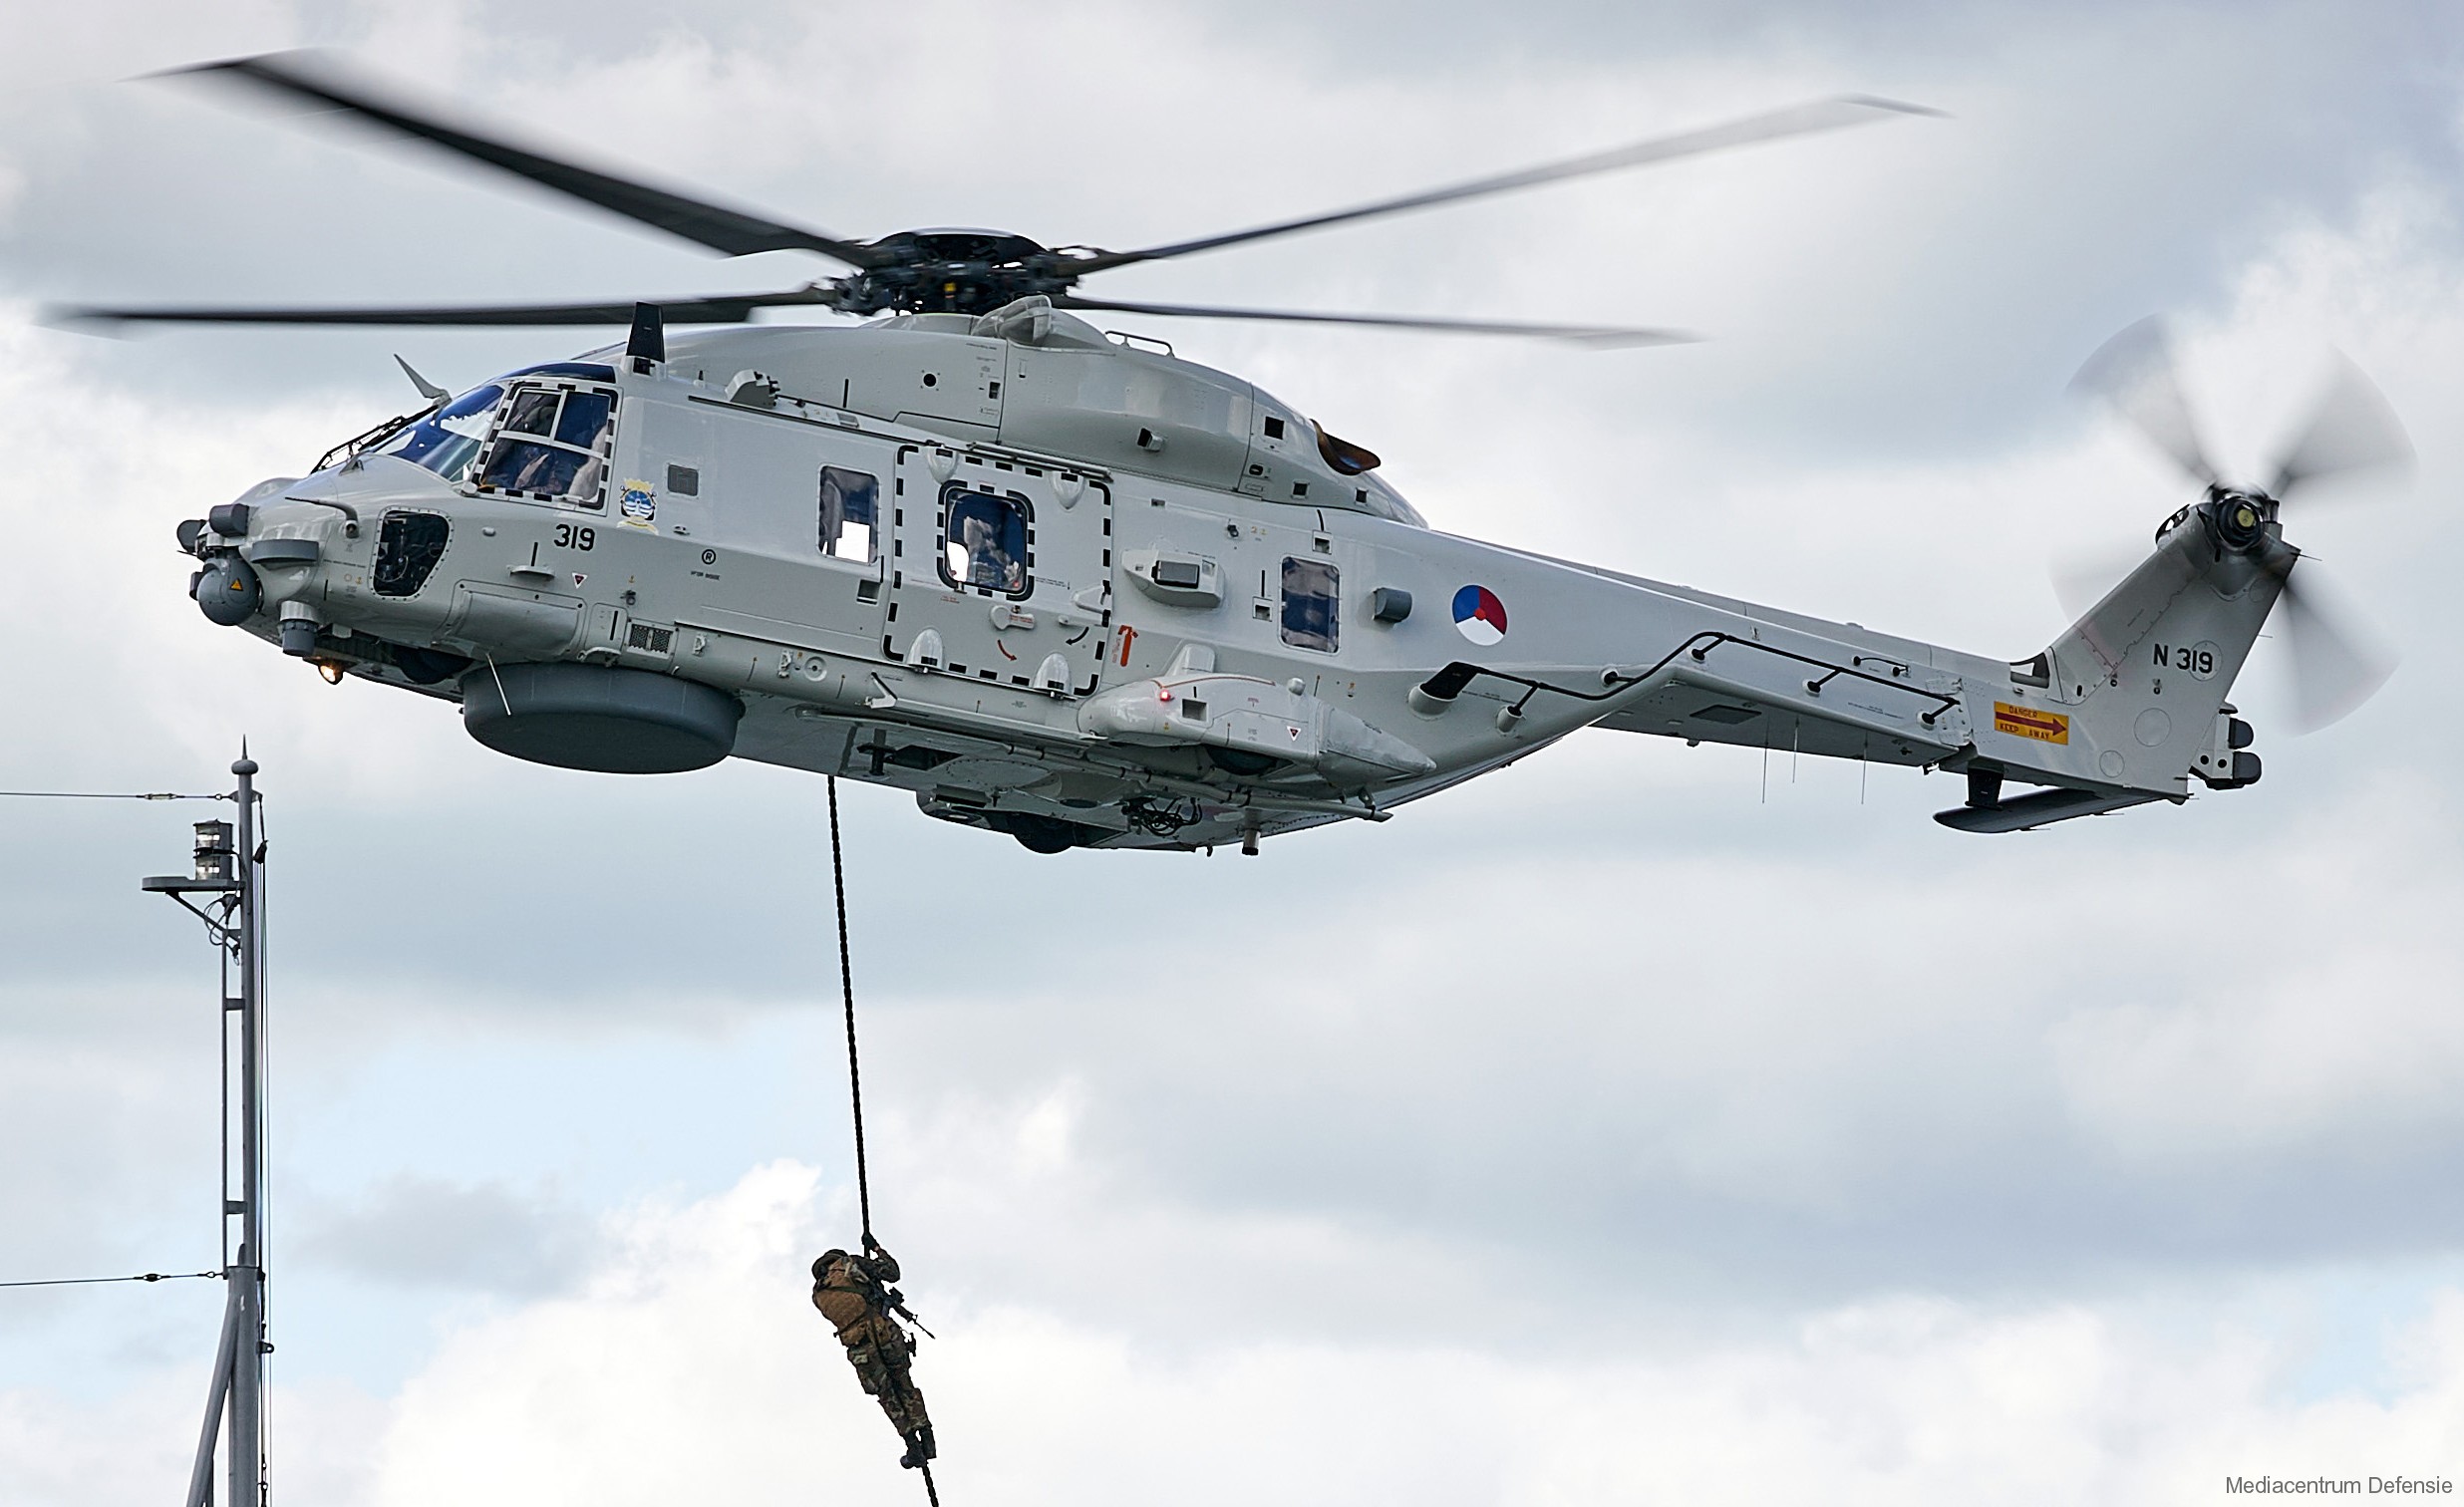 nh90 nfh helicopter royal netherlands navy koninklijke marine n-319 06